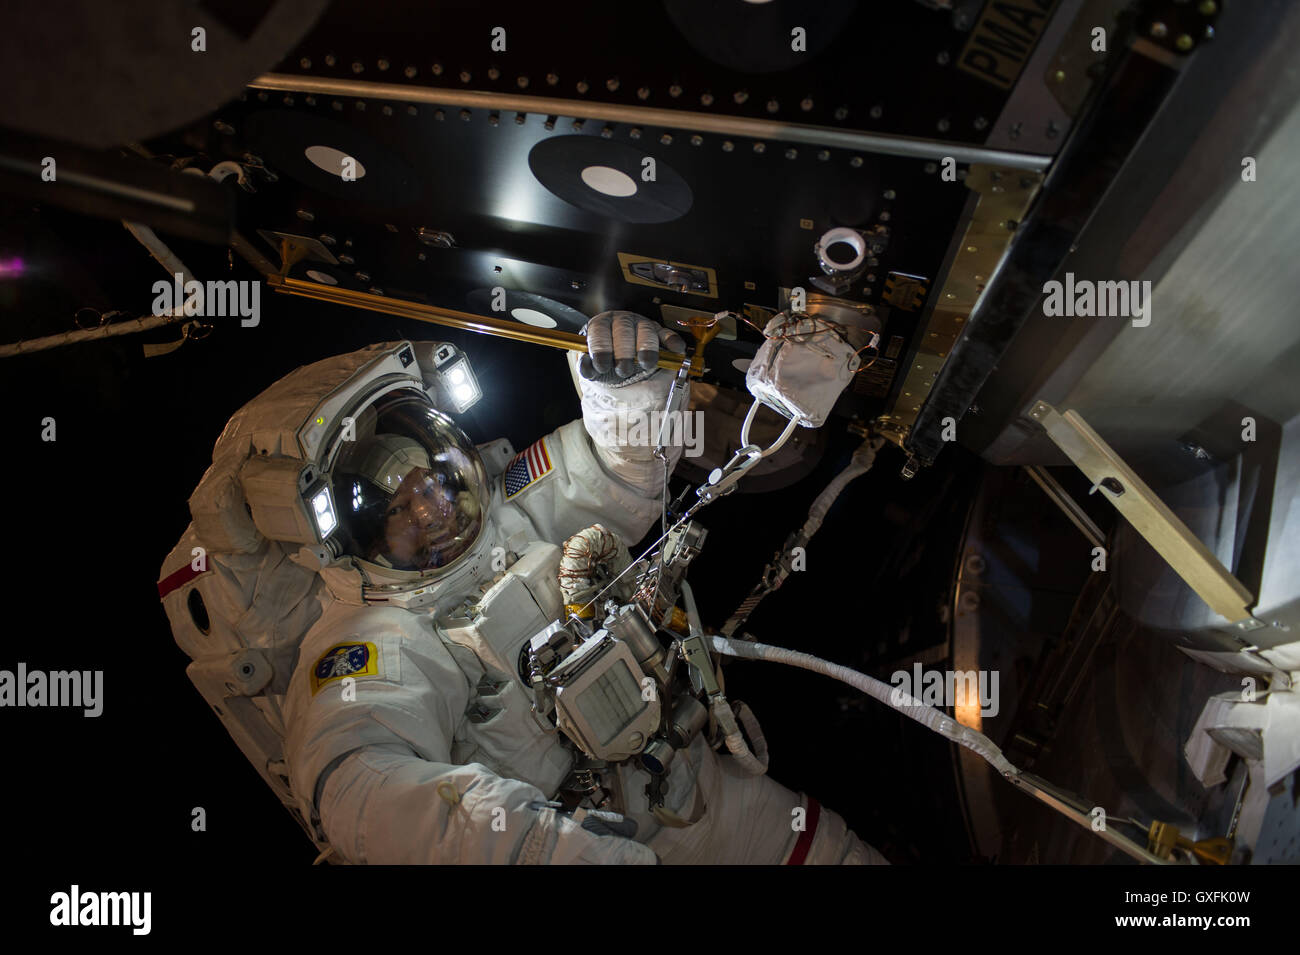 Stazione Spaziale Internazionale Expedition 48 membri dell equipaggio astronauta della NASA Commander Jeff Williams installa i primi due internazionali adattatori docking sulla stazione esterno durante 5 ore, 58-minute spacewalk Agosto 19, 2016. Questi adattatori possono essere utilizzati per il futuro arrivo di Boeing e SpaceX navicelle spaziali commerciali. Foto Stock